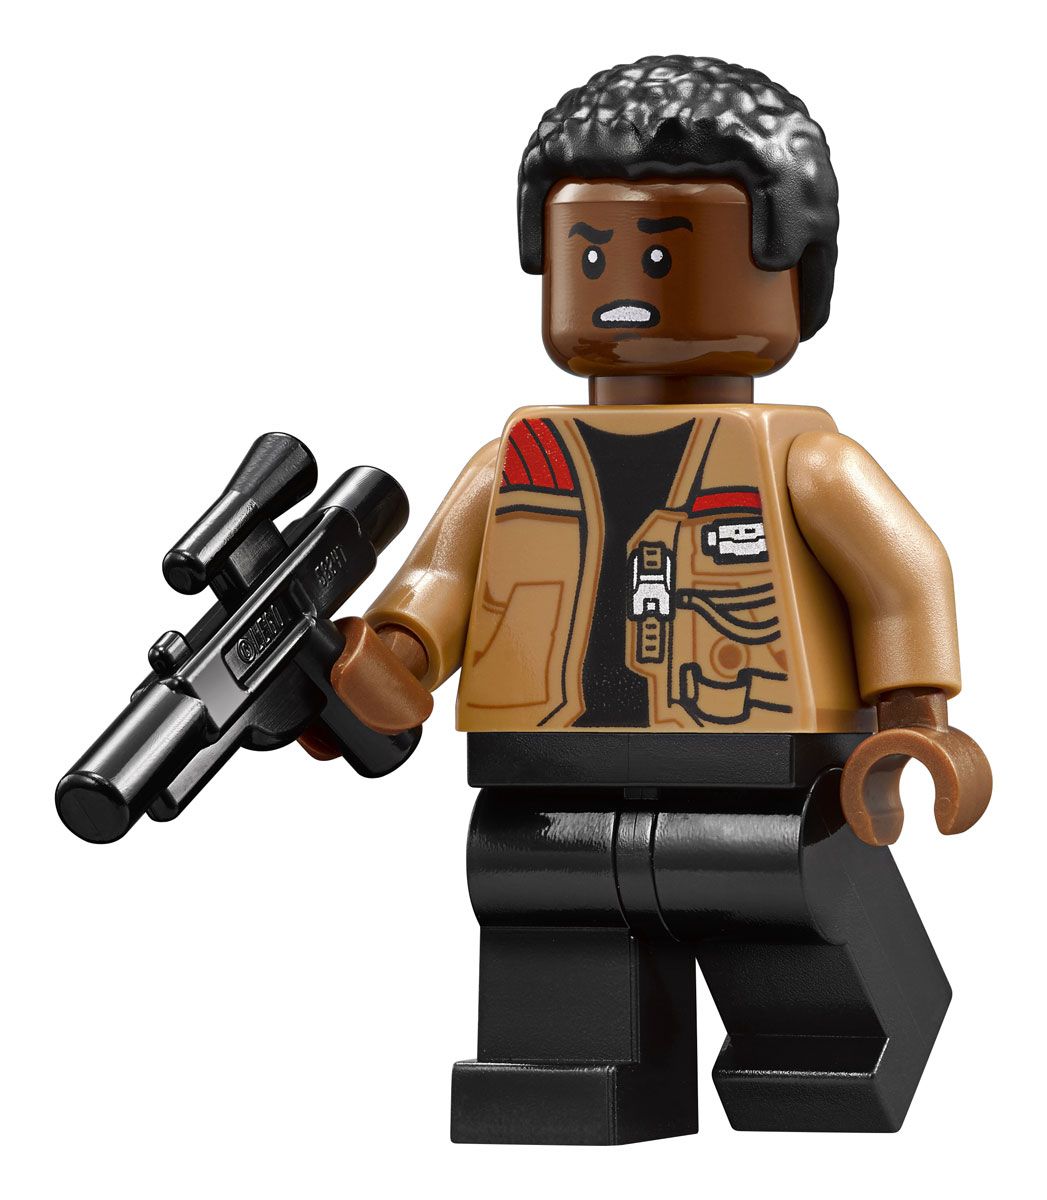 LEGO Star Wars 75178   